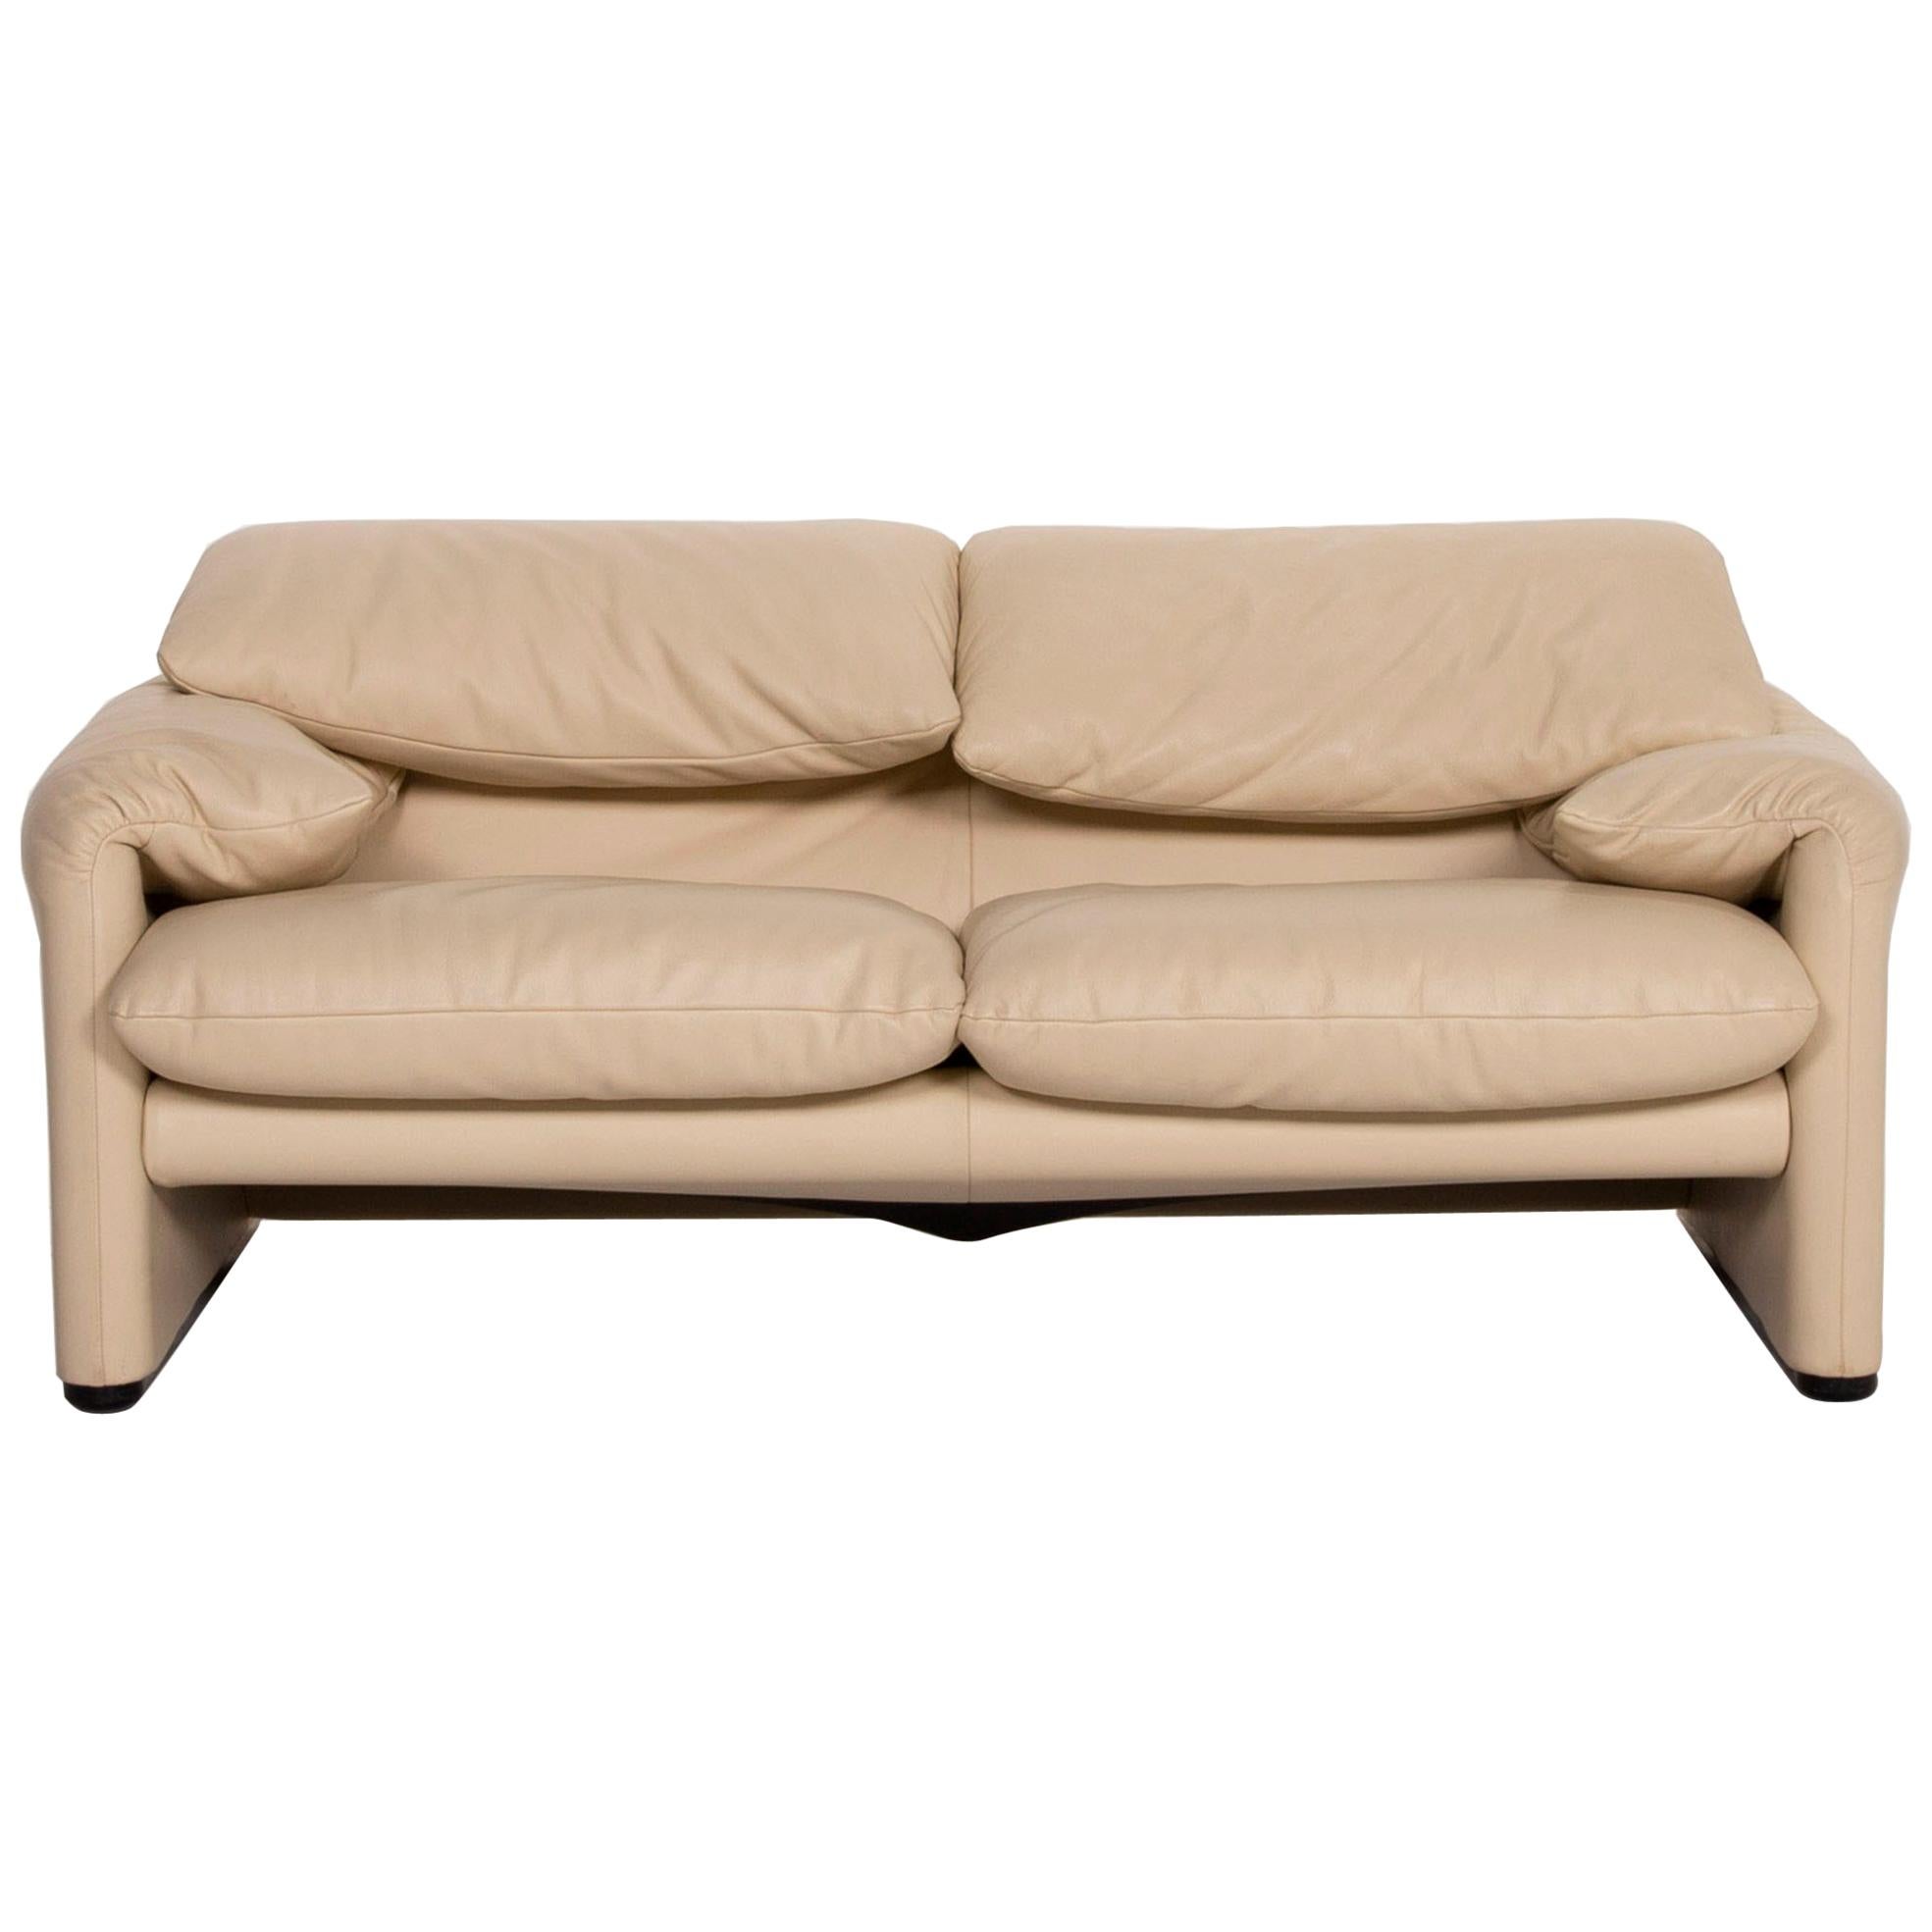 Cassina Maralunga Leather Sofa Cream Two-Seat For Sale